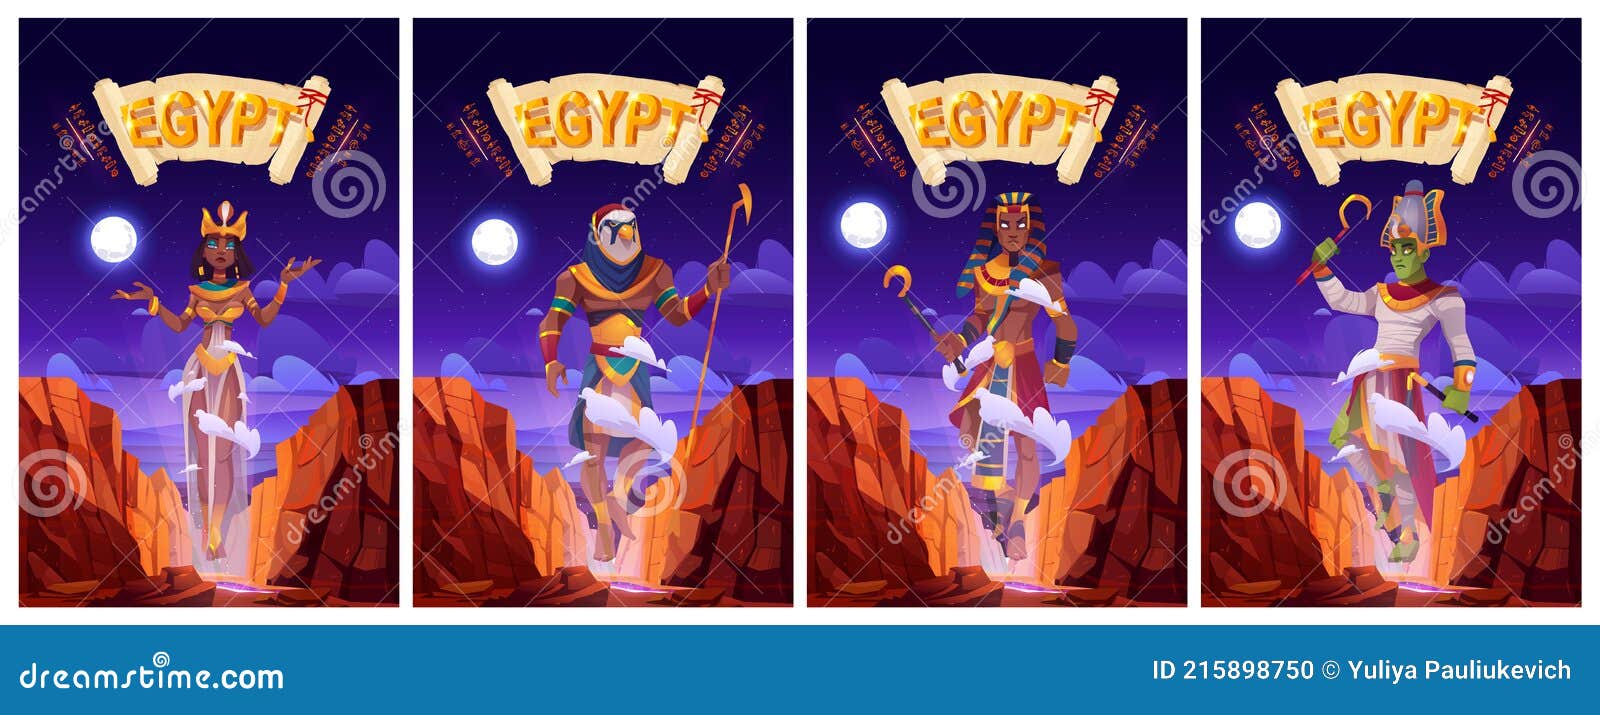 cartoon posters egyptian gods ra, horus, pharaoh